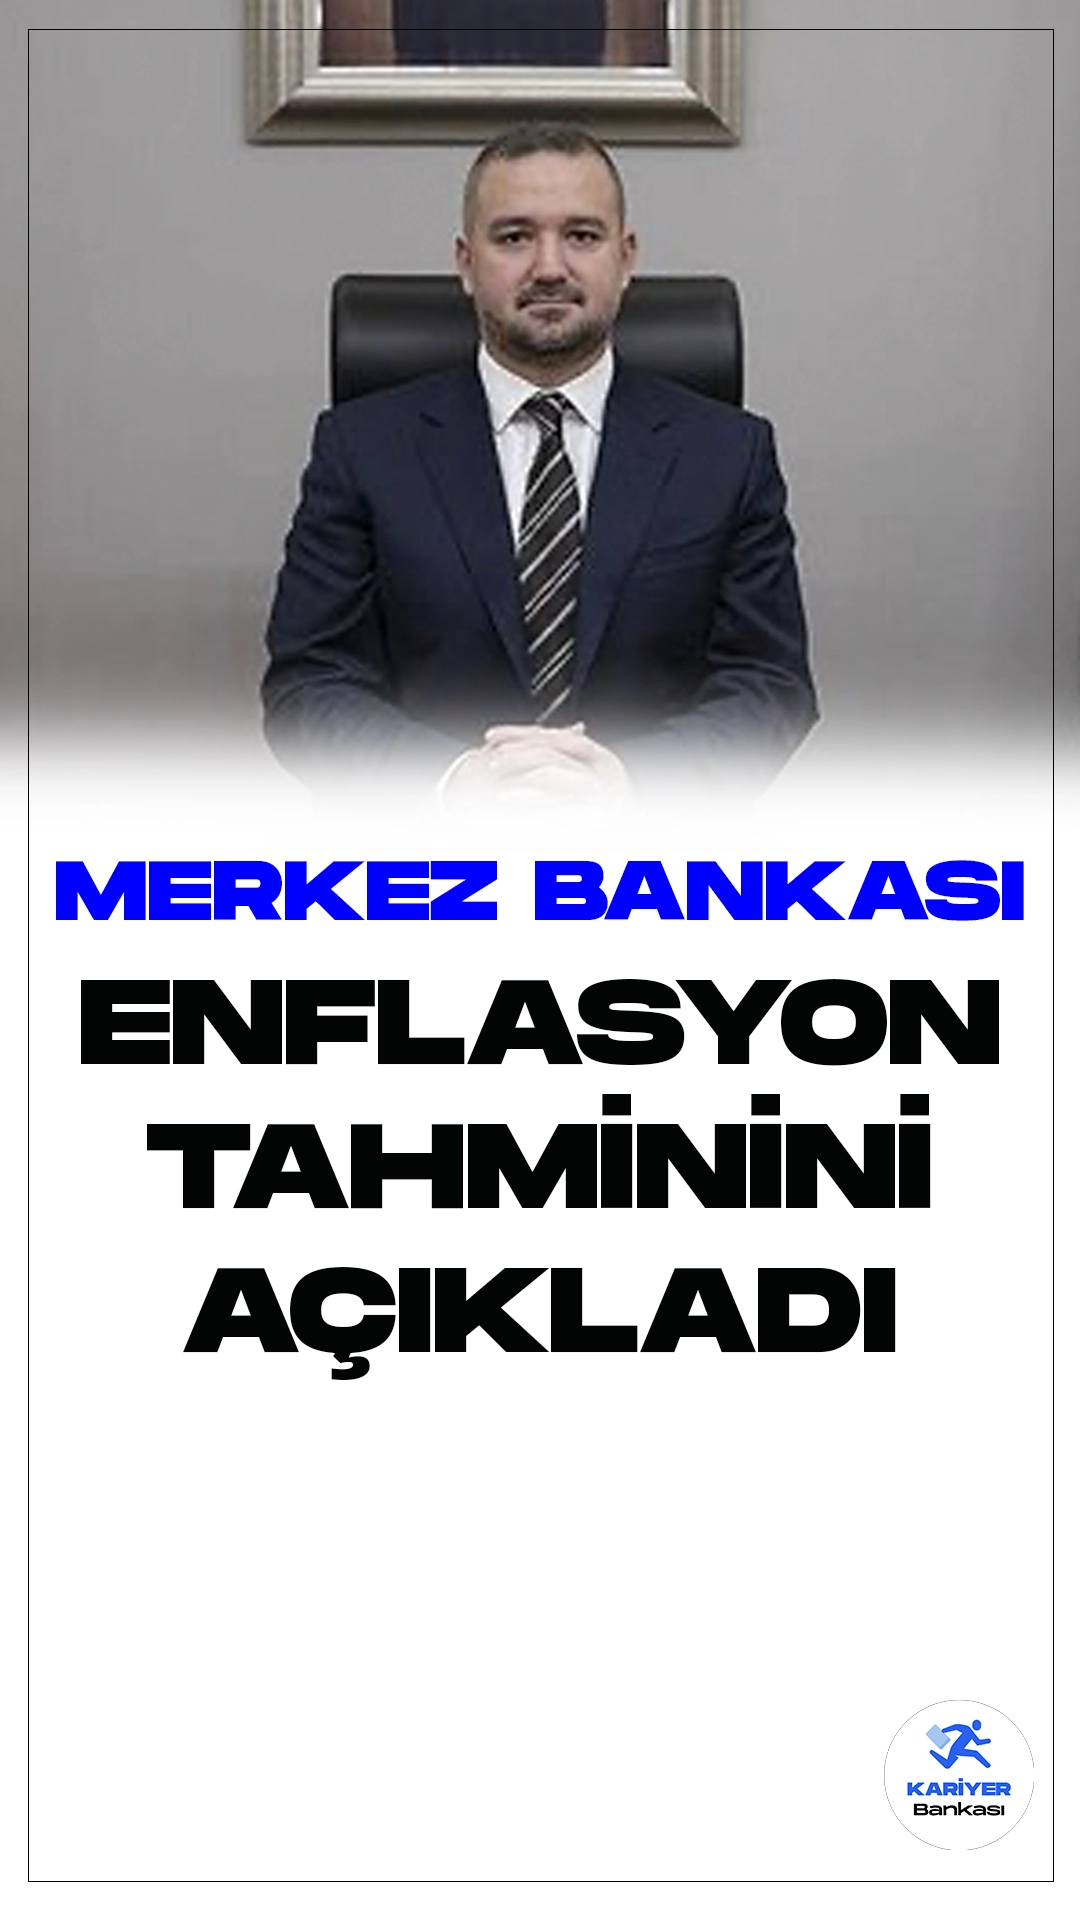 Merkez Bankası Enflasyon Tahminini Açıkladı. Türkiye Cumhuriyet Merkez Bankası, yılın ilk Enflasyon Raporu toplantısında büyük bir duyuru yaptı. Yıl sonu enflasyon tahmini yüzde 36 olarak açıklanırken, 2025 için ise bu rakam yüzde 14 olarak belirlendi. Başkan Fatih Karahan, toplantıda önemli açıklamalarda bulundu.